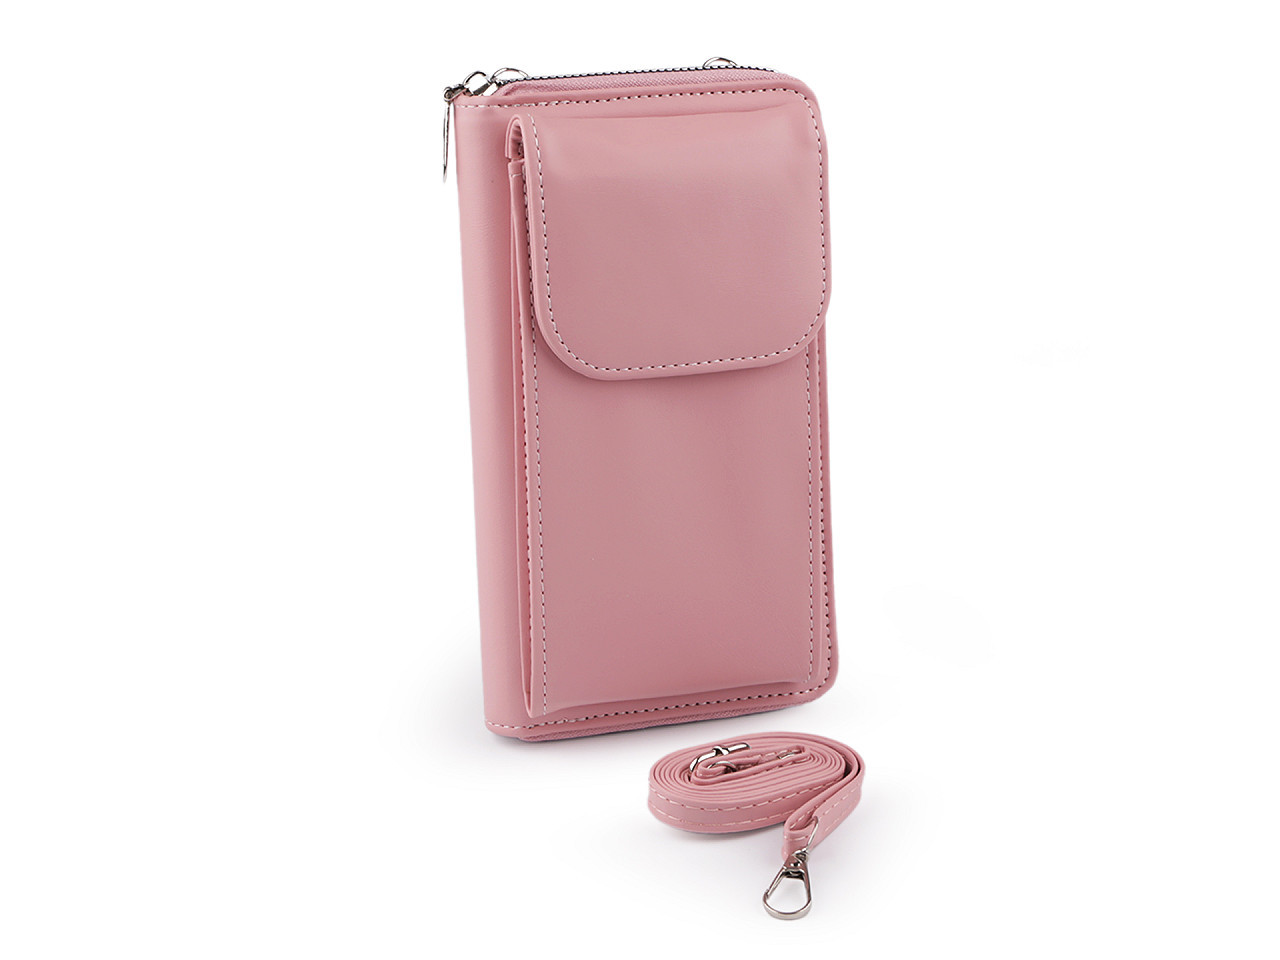 Peněženka s kapsou na mobil přes rameno crossbody 11x19cm, barva 2 pudrová